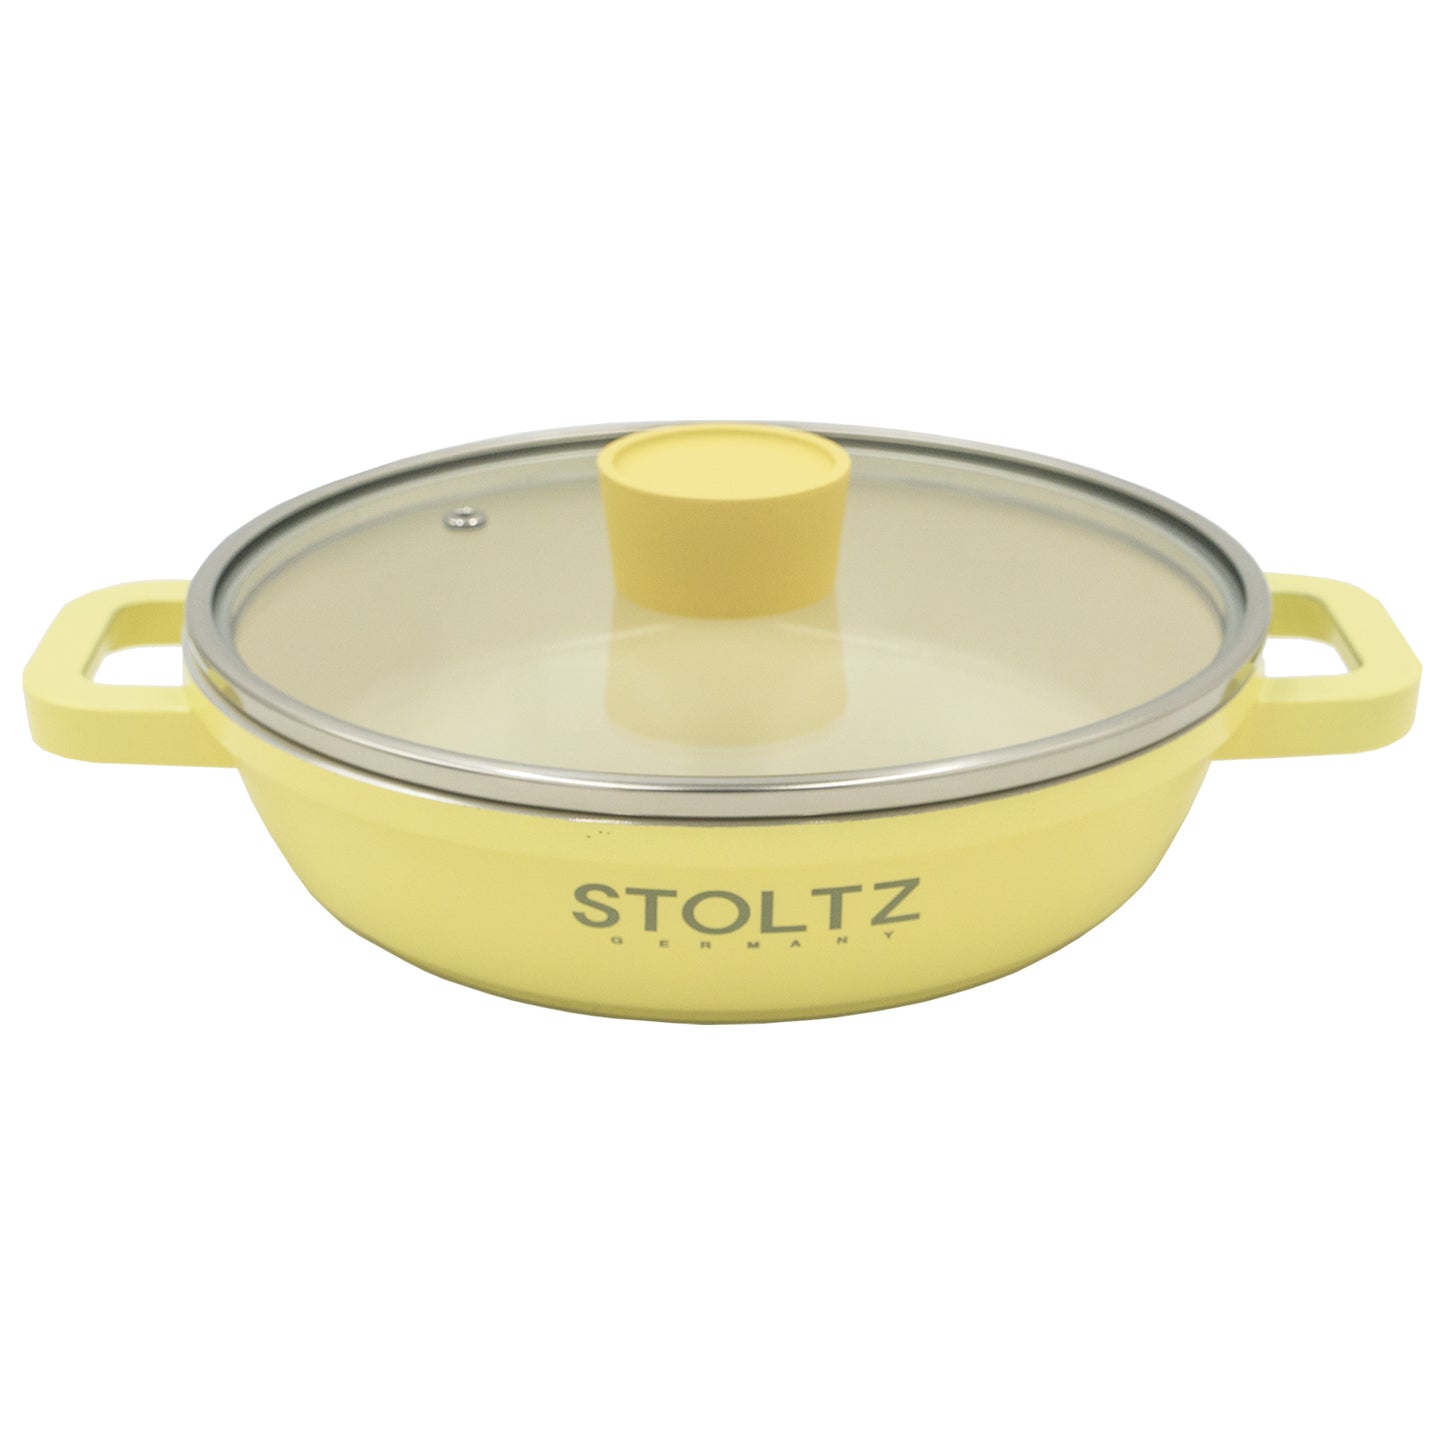 Stoltz Germany IH Casserole Pot 20cm Lemon Meringue (KP963274)